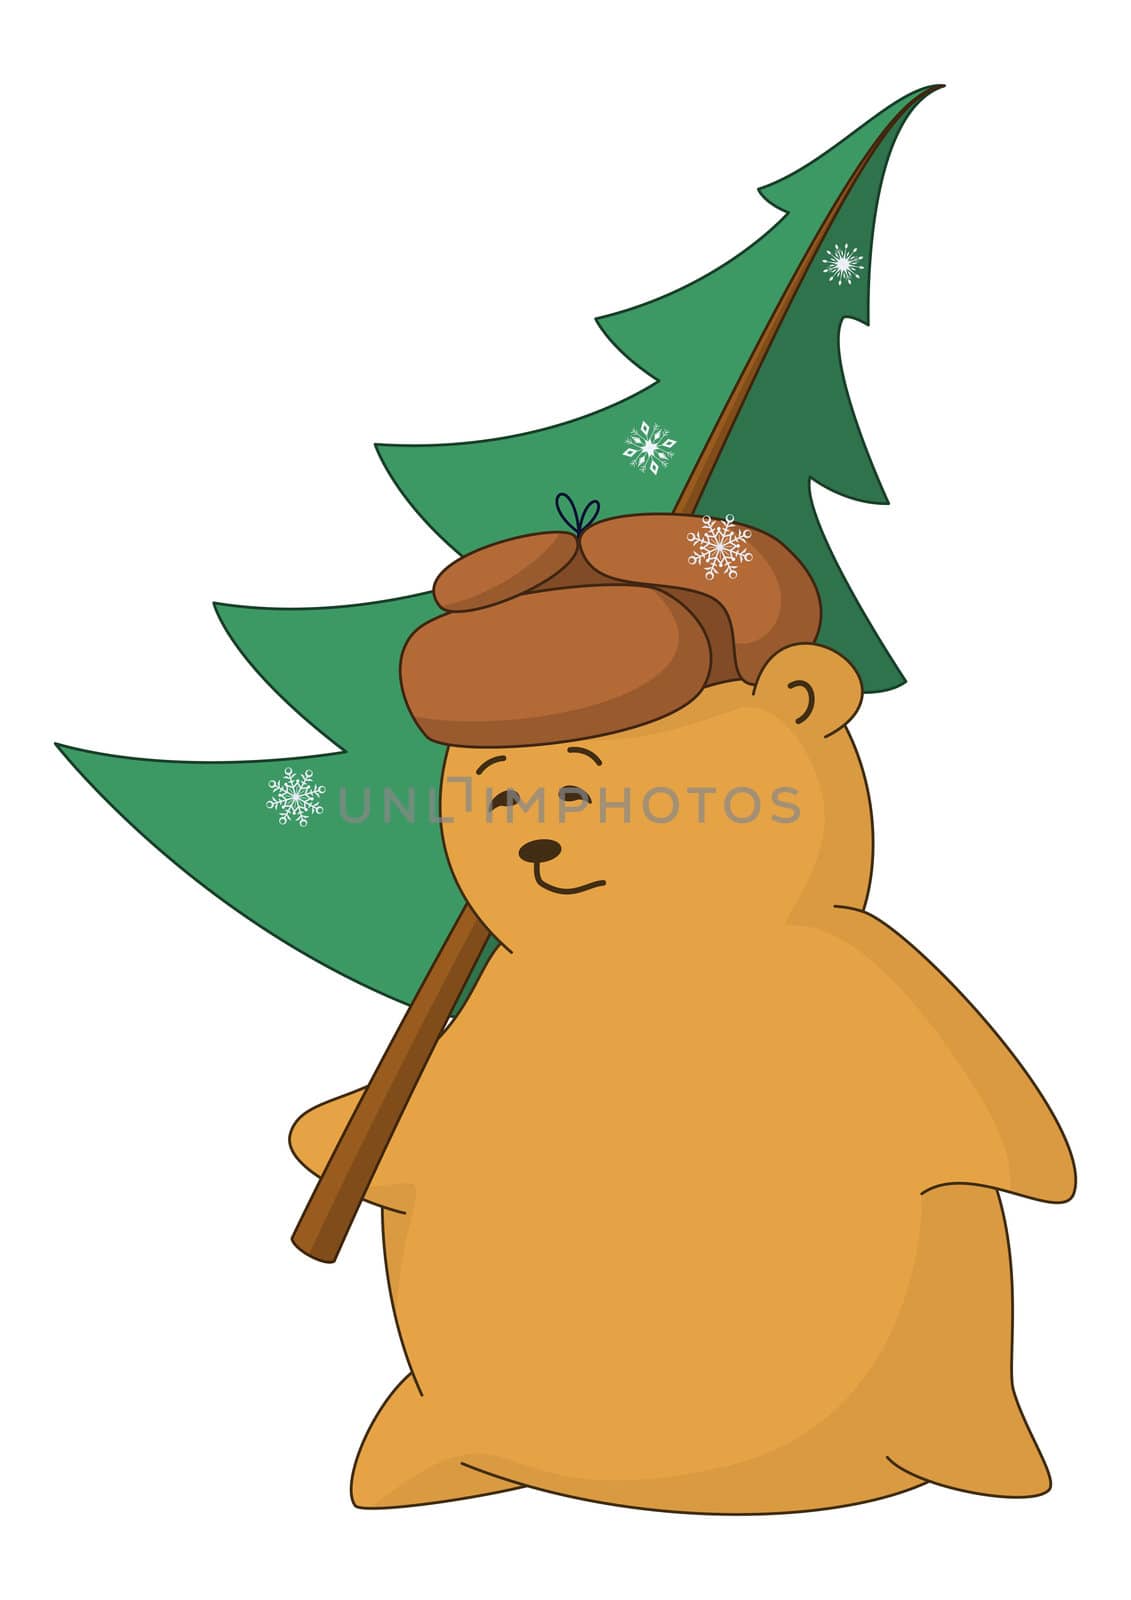 Cartoon, teddy bear with a Christmas tree